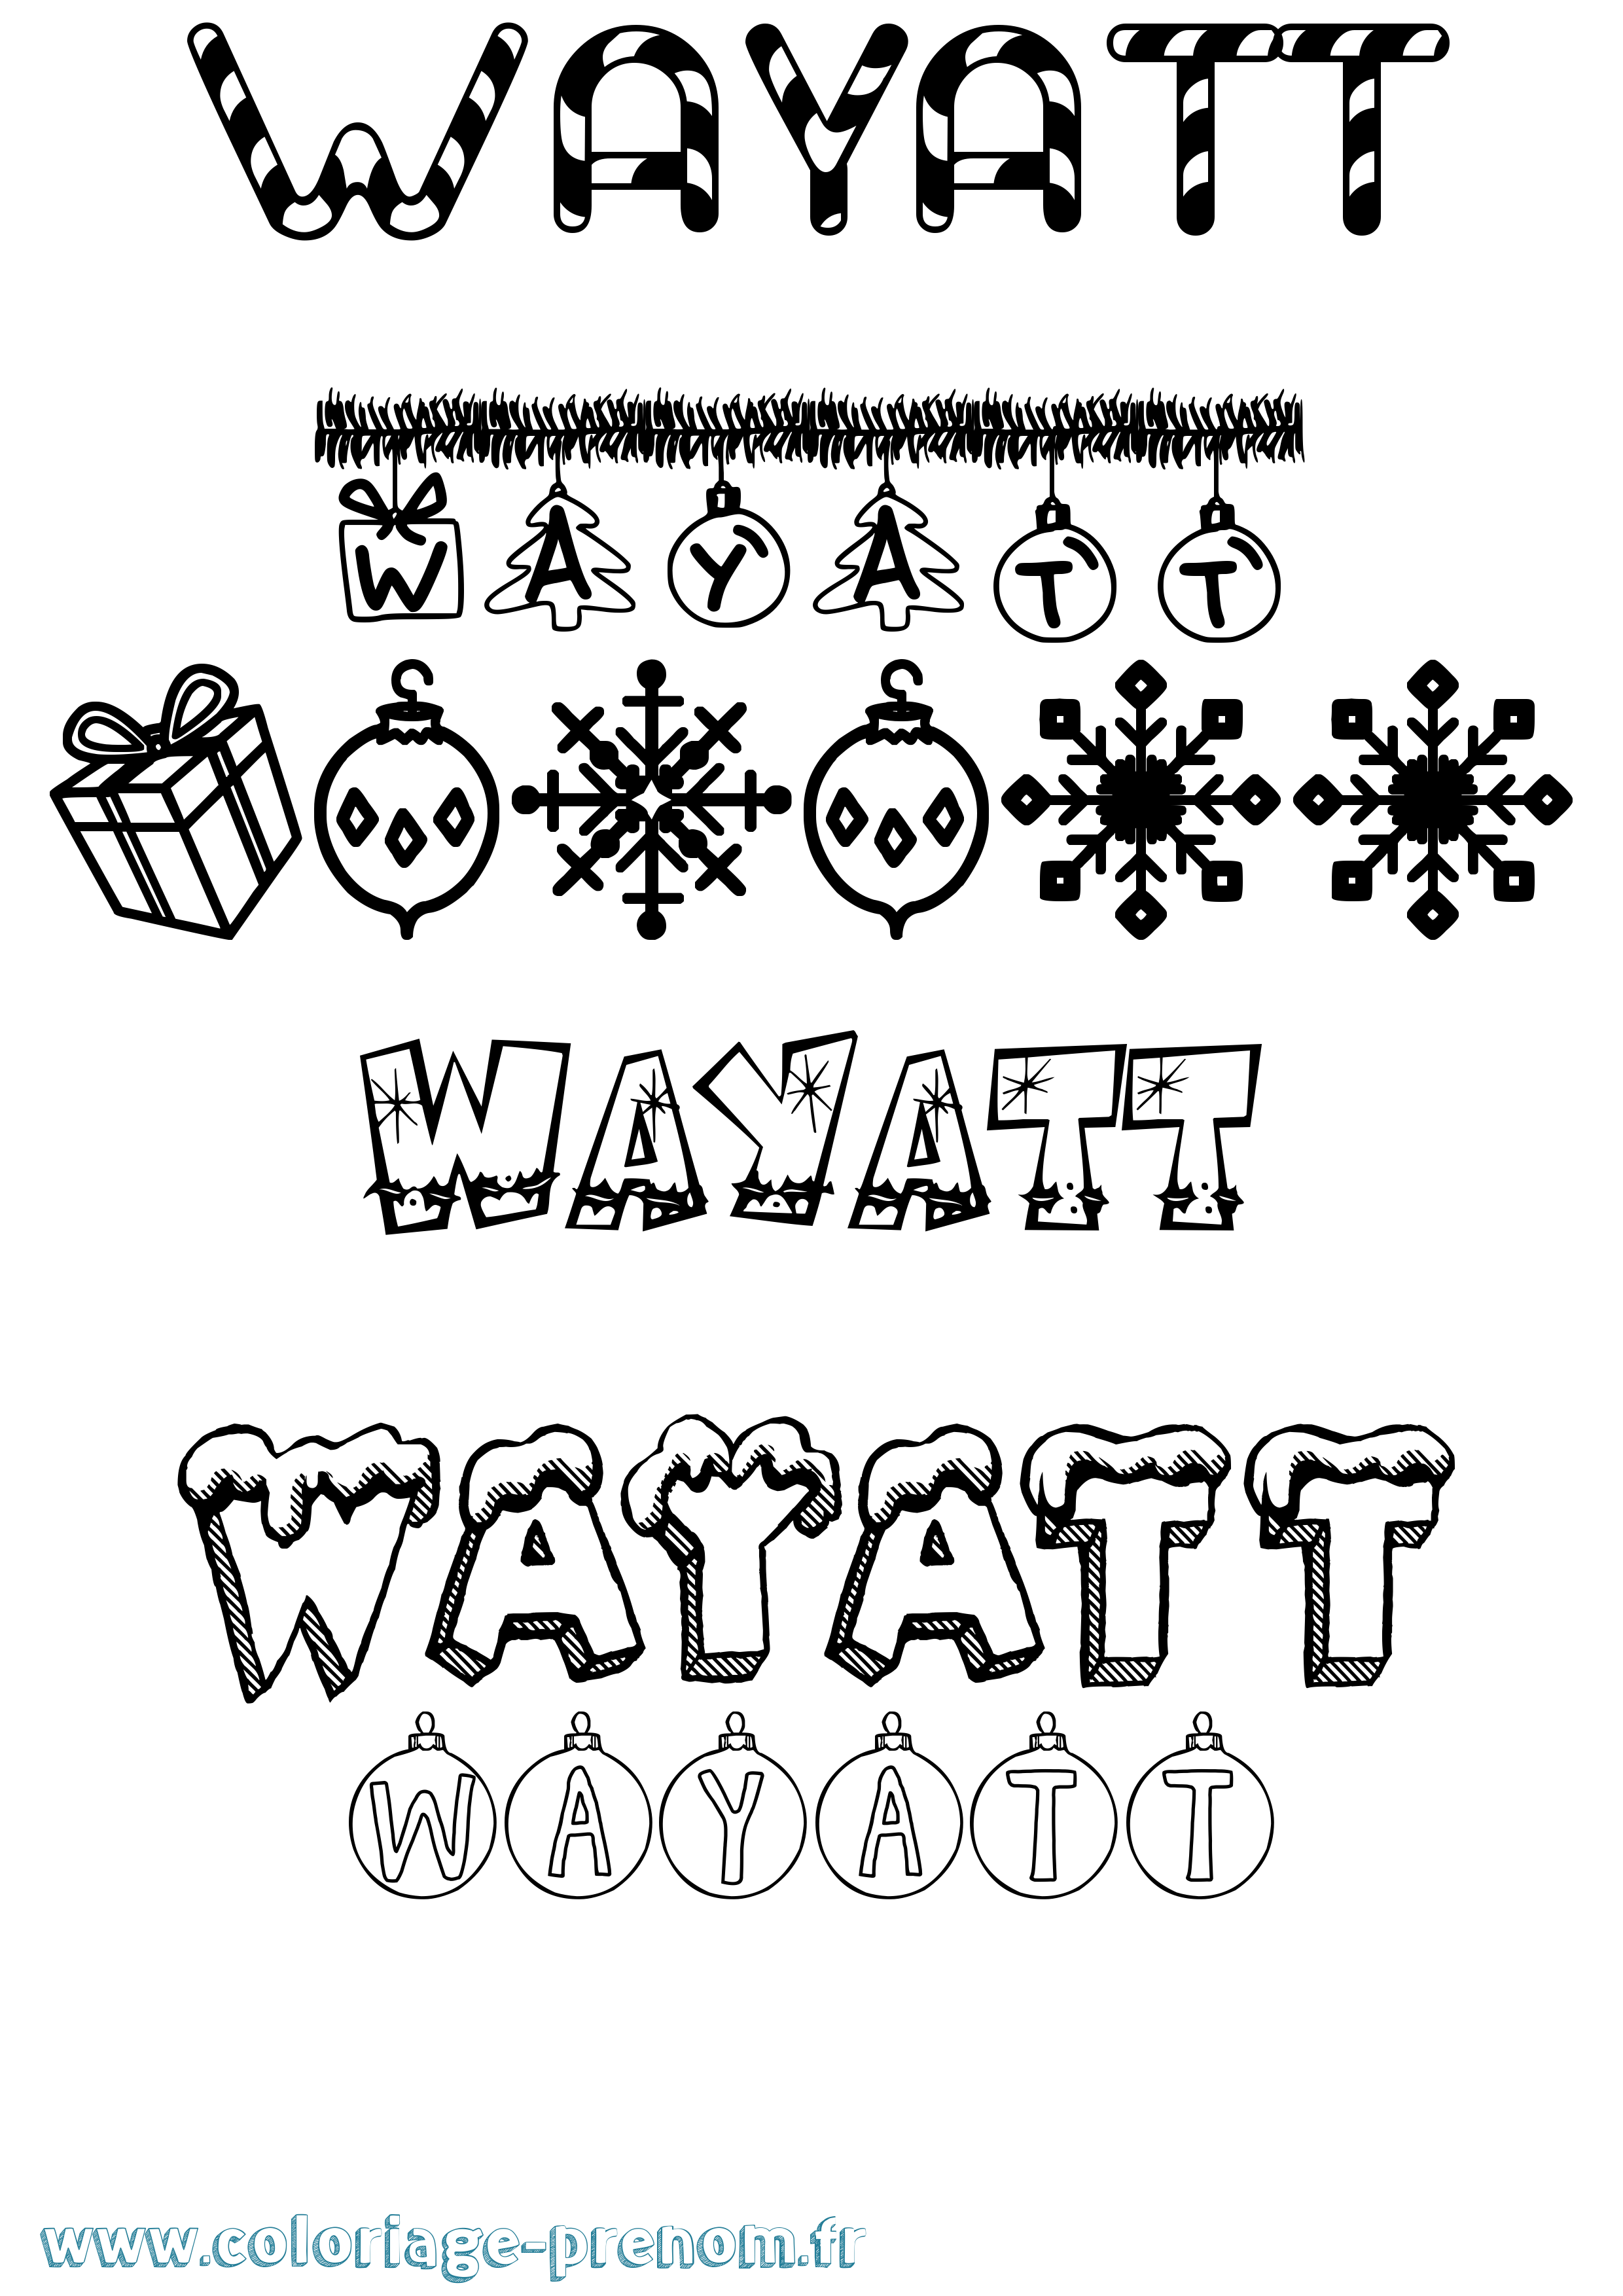 Coloriage prénom Wayatt Noël